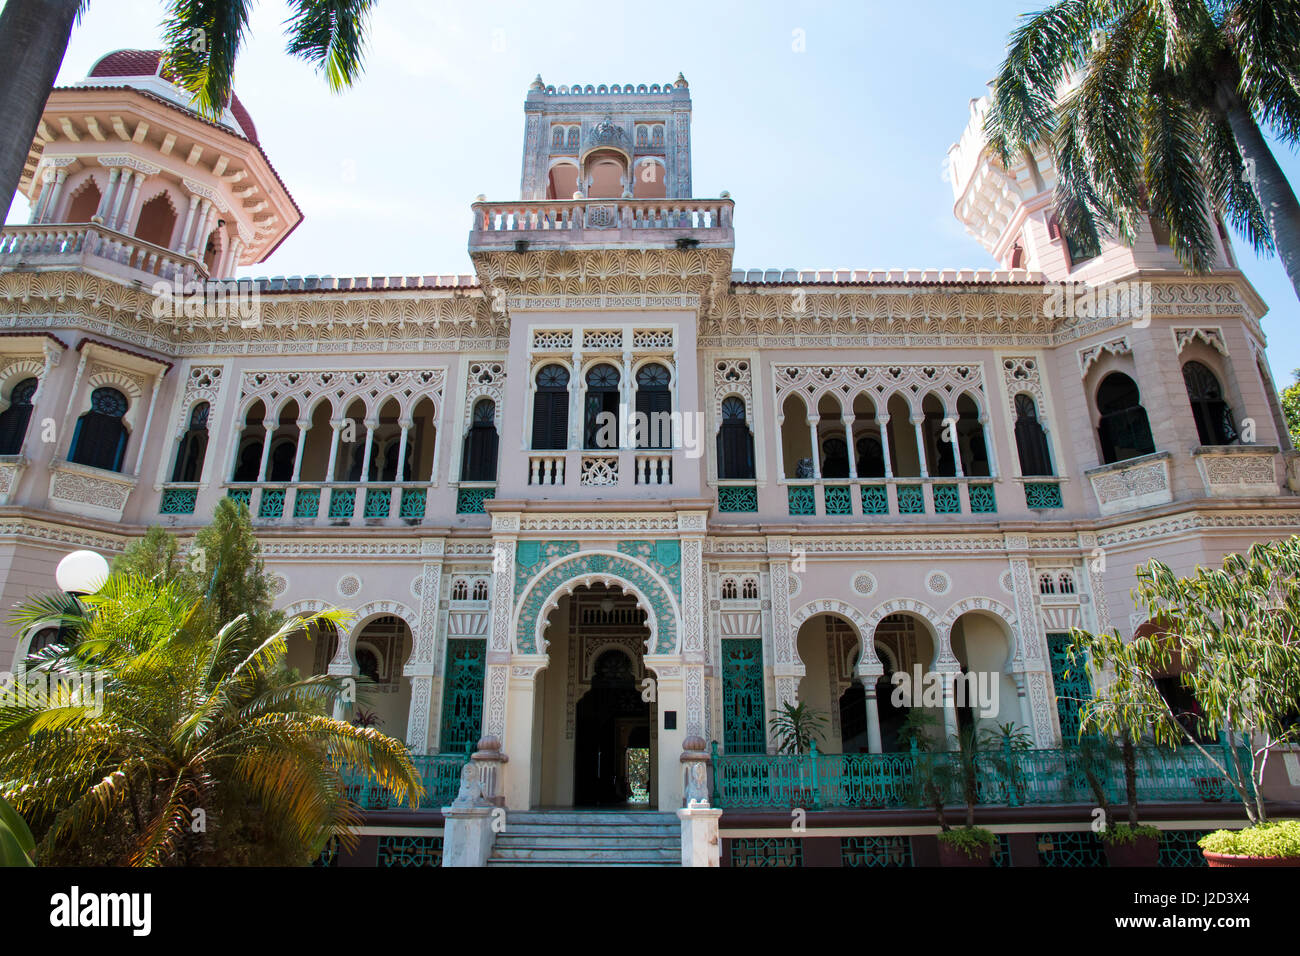 Kuba, Cienfuegos. Neo Centurylassical Gebäude mit europäischem Flair, das Palacio del Valle (1895) ehemalige Wohnhaus des Händlers Celestino Caceres ist ein architektonisches Juwel und Mughal-Stil mit maurischen Arabesken Motiven. Stockfoto